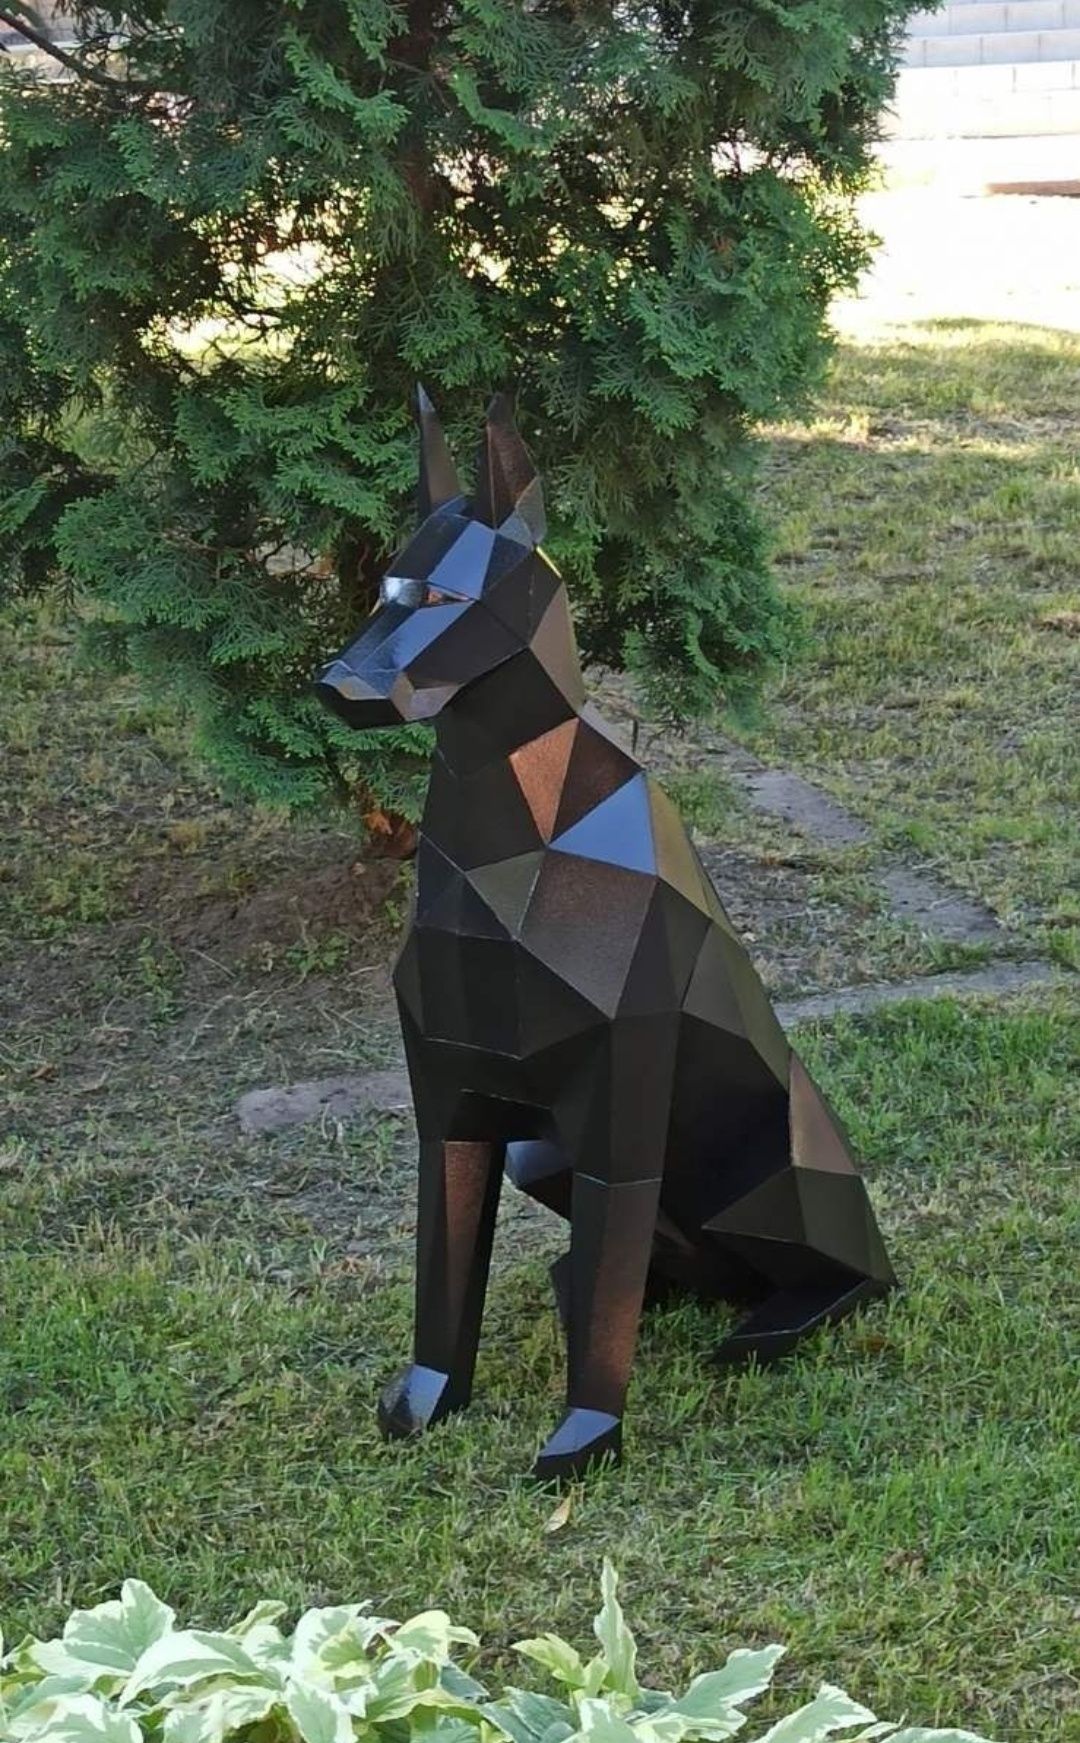 Конструктор из картона доберман собака 3D садовая фигура